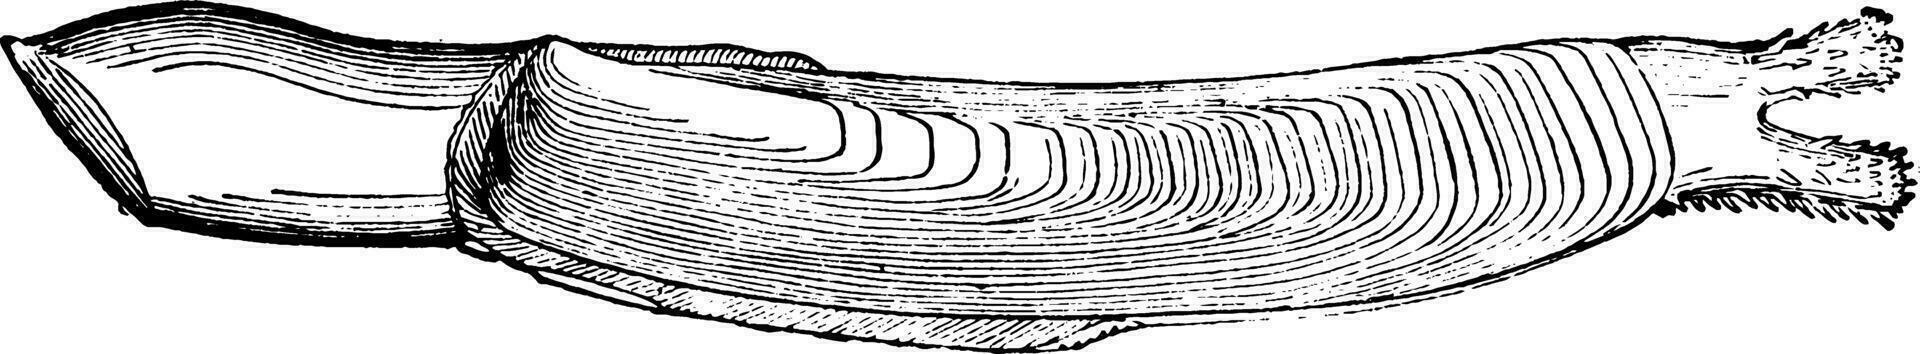 le rasoir coquille palourde, ancien illustration. vecteur